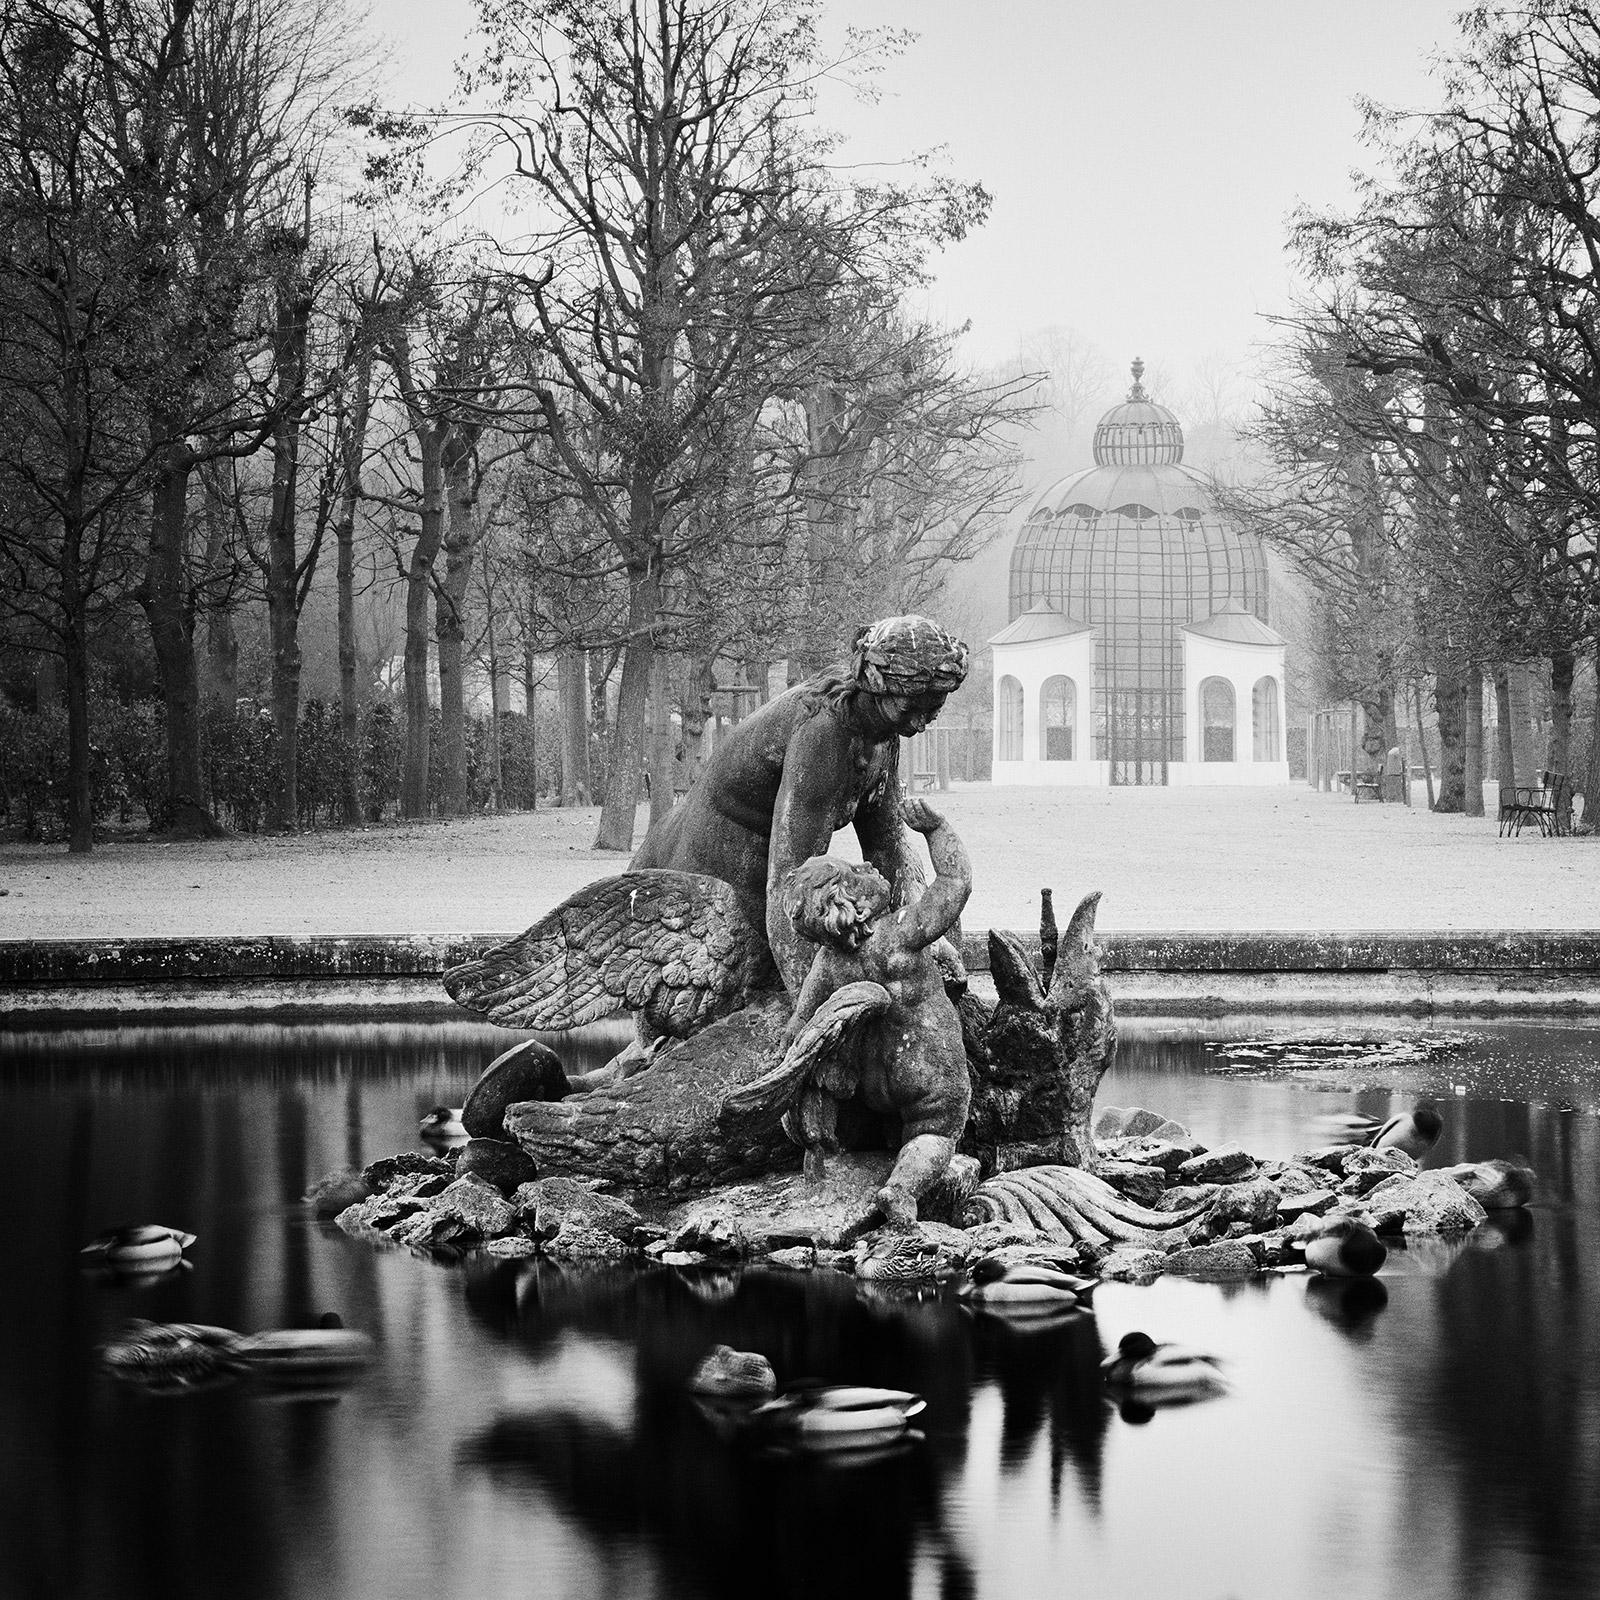 Duck Race Schloss Schoenbrunn Vienna black and white art landscape photography